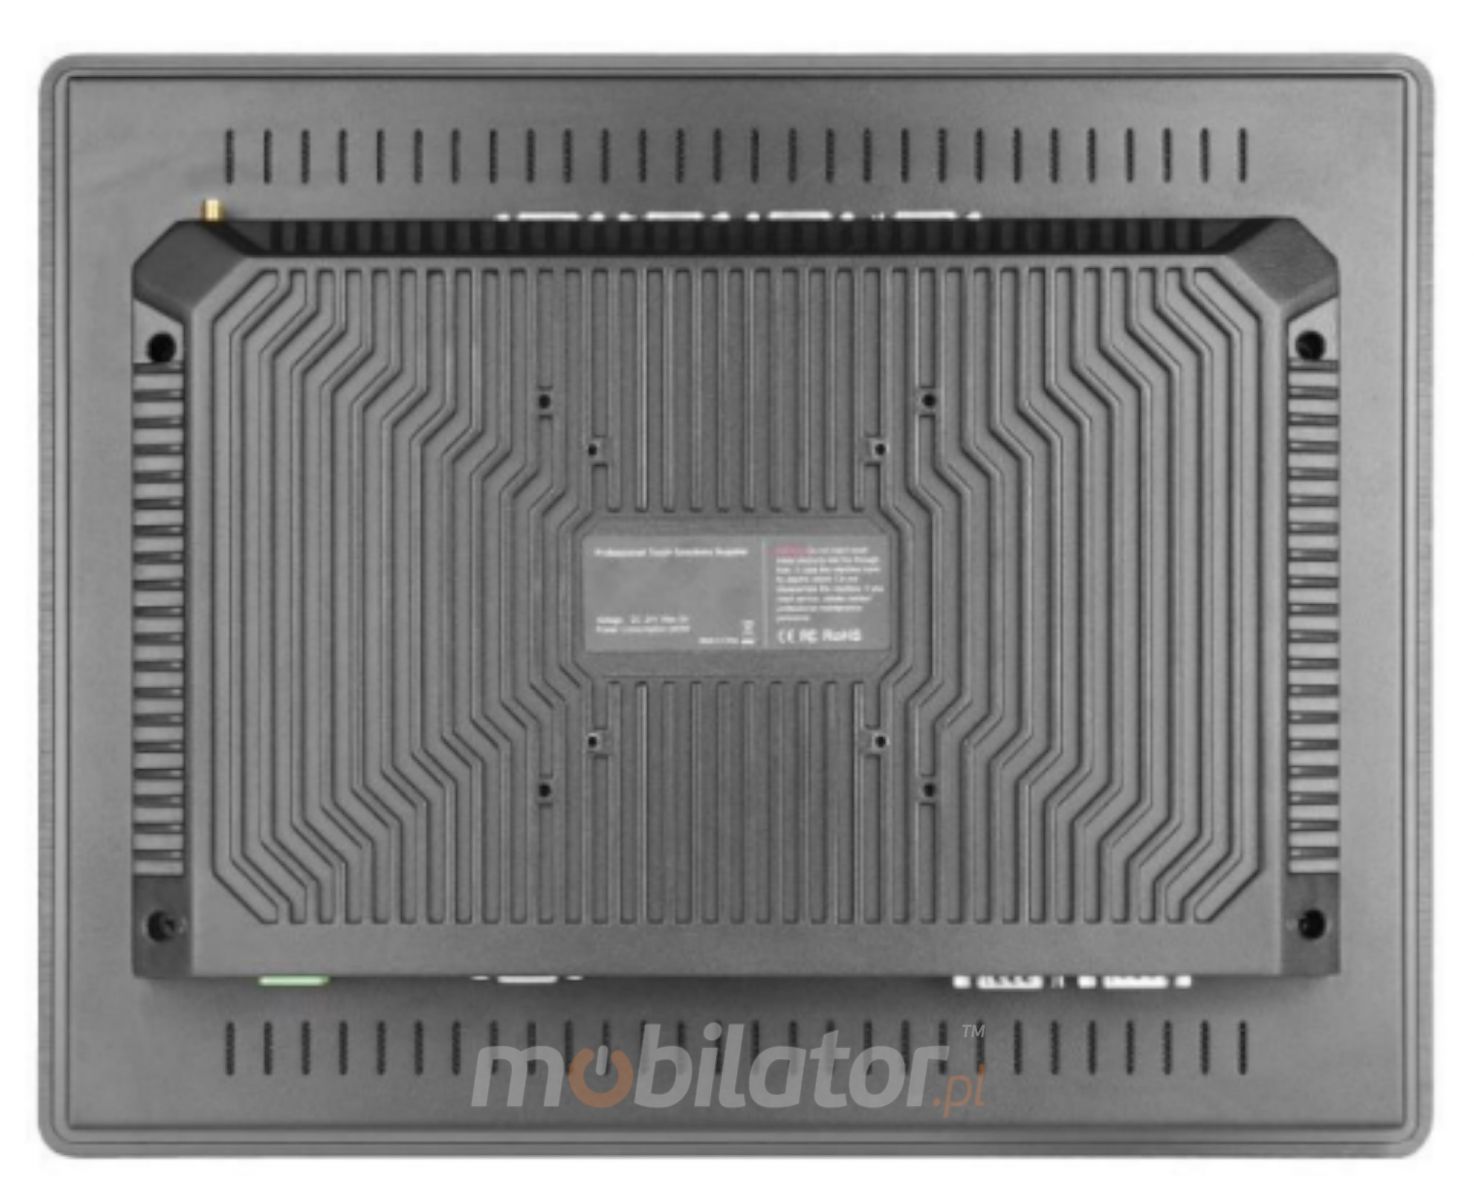 BIBOX-190PC2 in robust metal housing